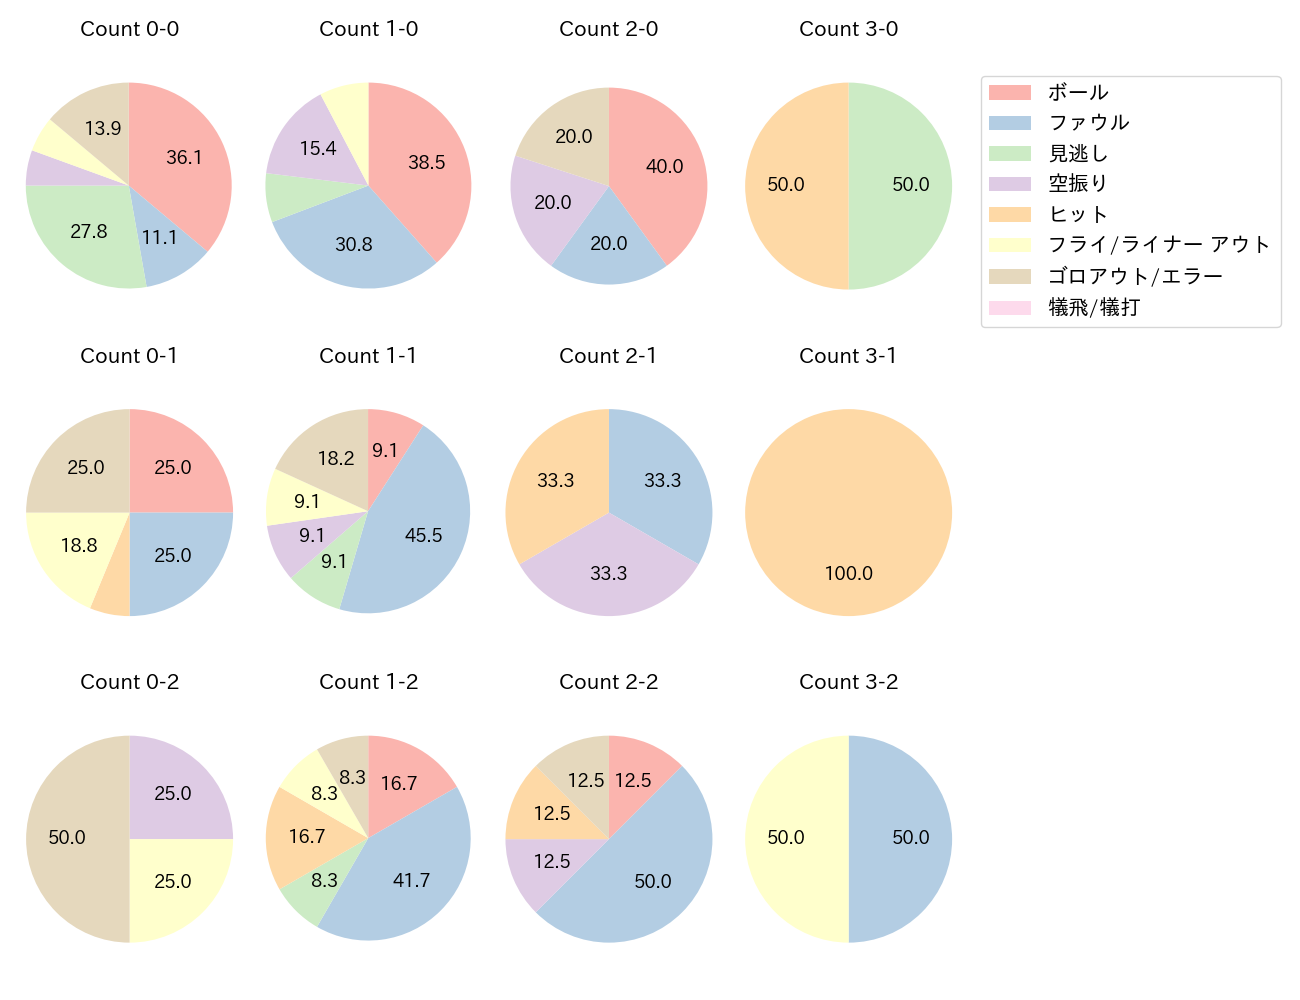 牧 秀悟の球数分布(2021年7月)